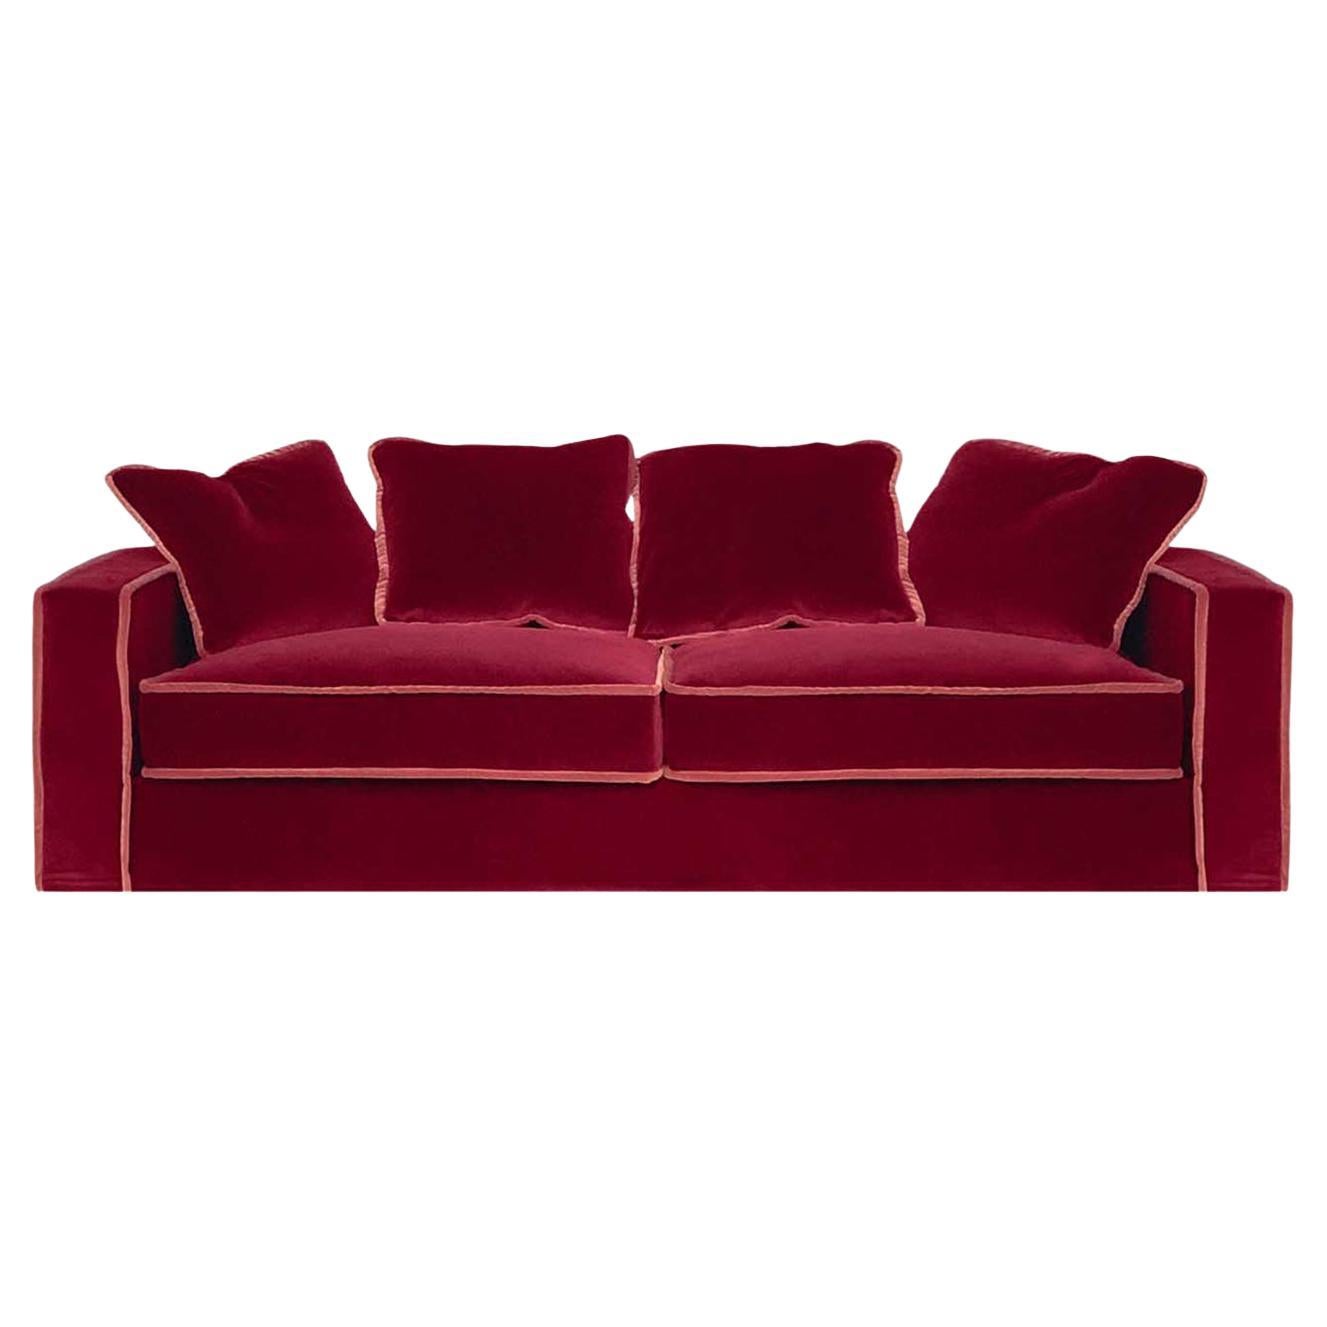 Bio-Sofa mit 3 Sitzern in Rot und Orange von Raffaella